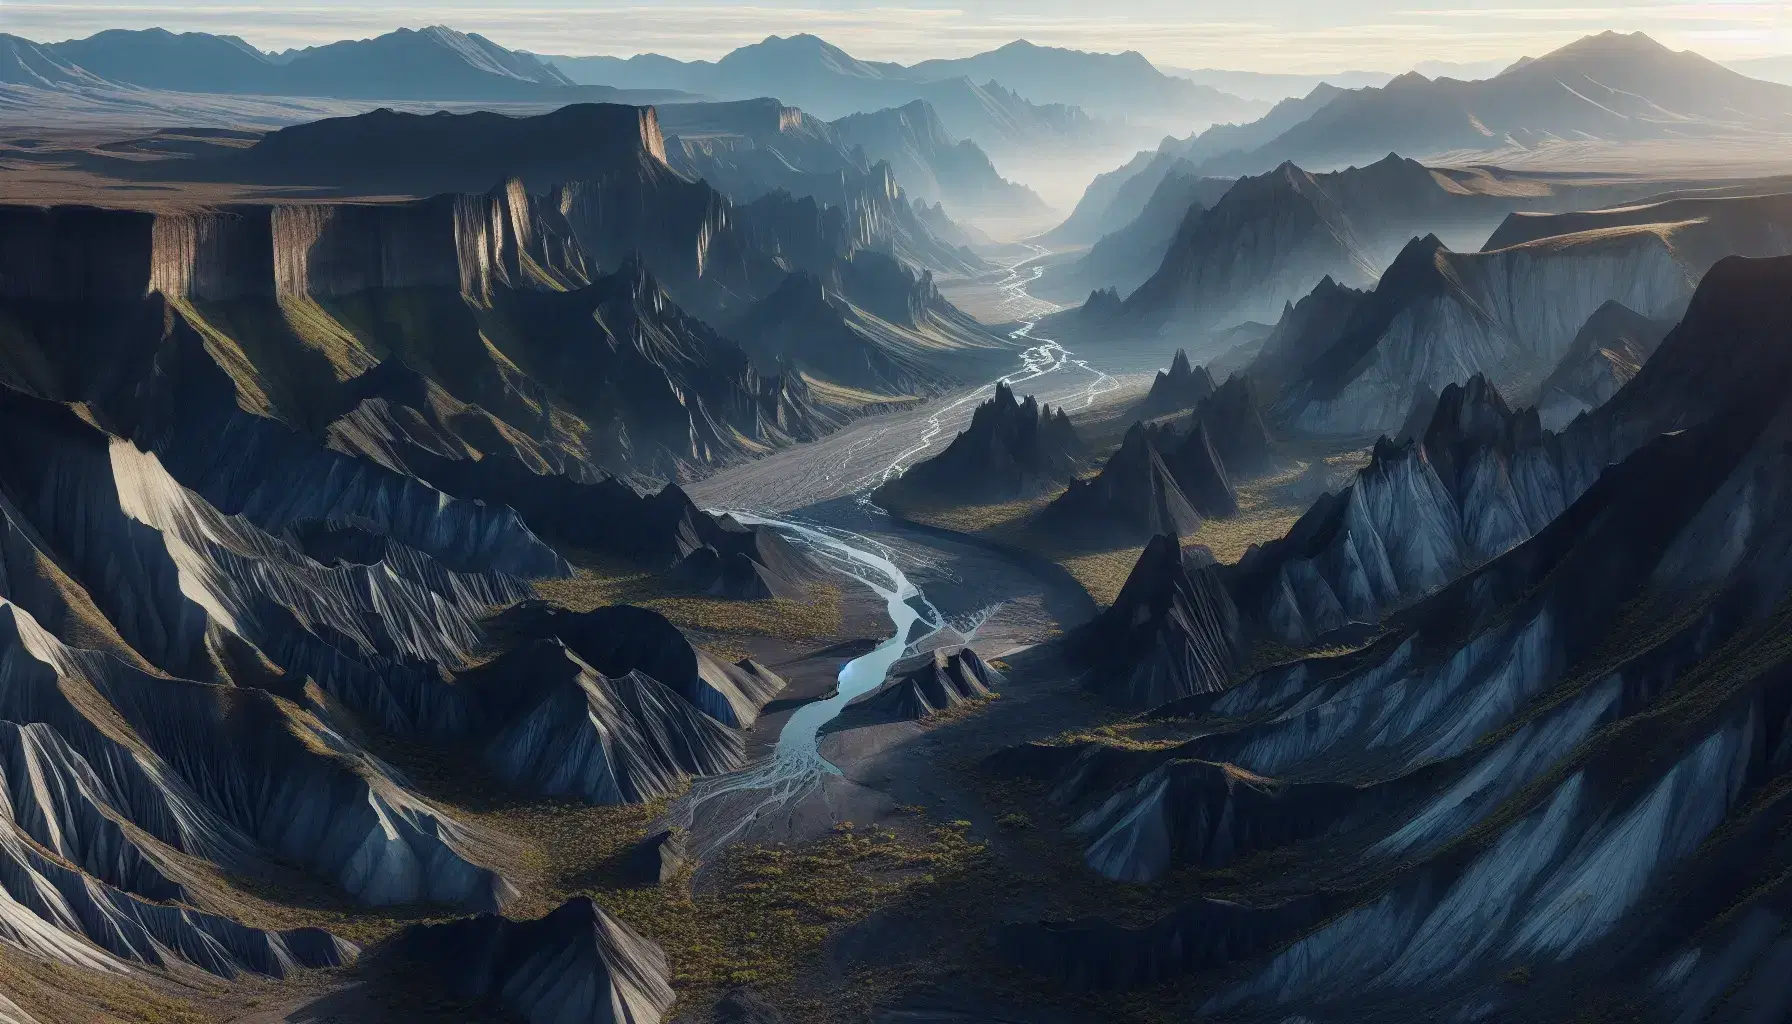 Vista aérea de una cadena montañosa con picos irregulares, valle profundo y río serpenteante, reflejando la luz solar en un paisaje natural sin señales de presencia humana.